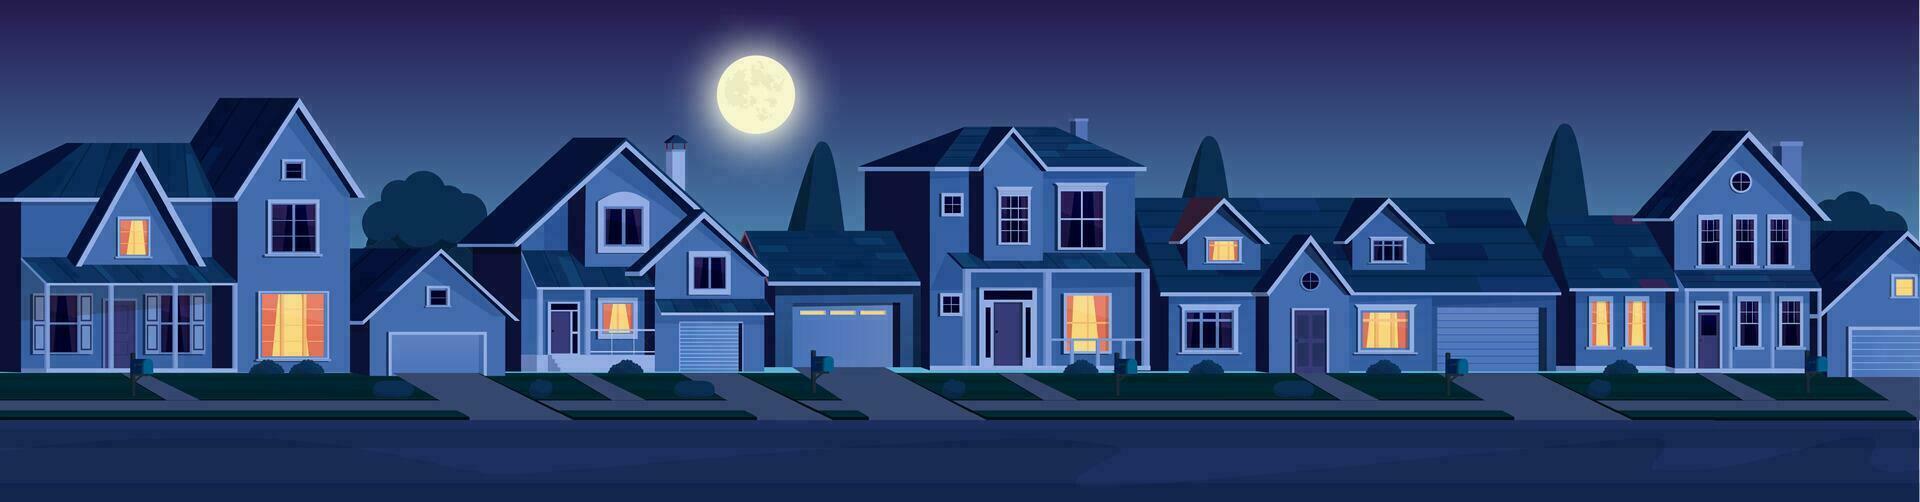 urban eller förorts grannskap på natt med verklig egendom fast egendom, hus med lampor. tecknad serie landskap med förorts stugor, måne och stjärnor i mörk himmel. vektor illustration i en platt stil